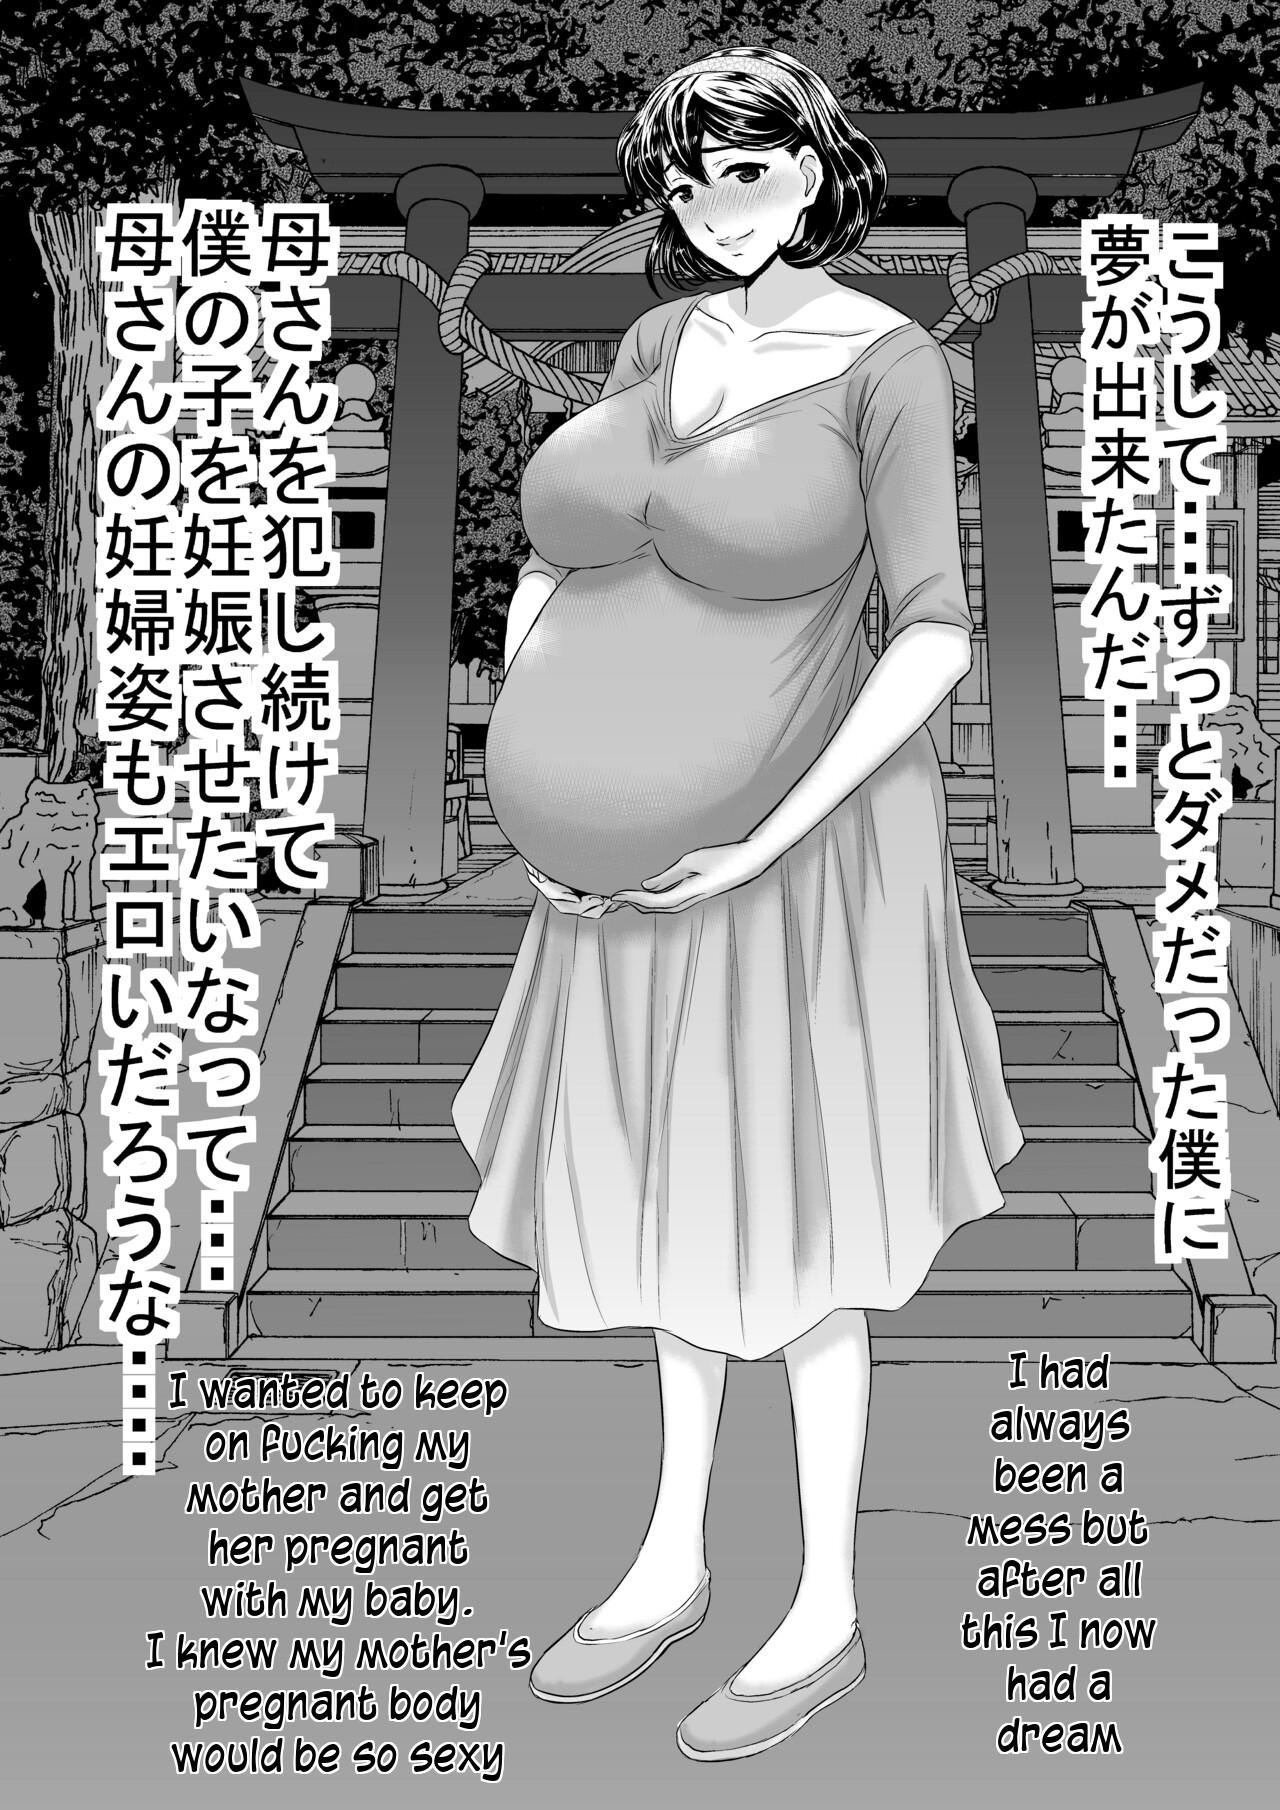 Spoon Yasashii Kaasan ni Tsukekonde Nakadashi Reipu Takuran | Taking advantage of my gentle mother - Original 19yo - Page 52